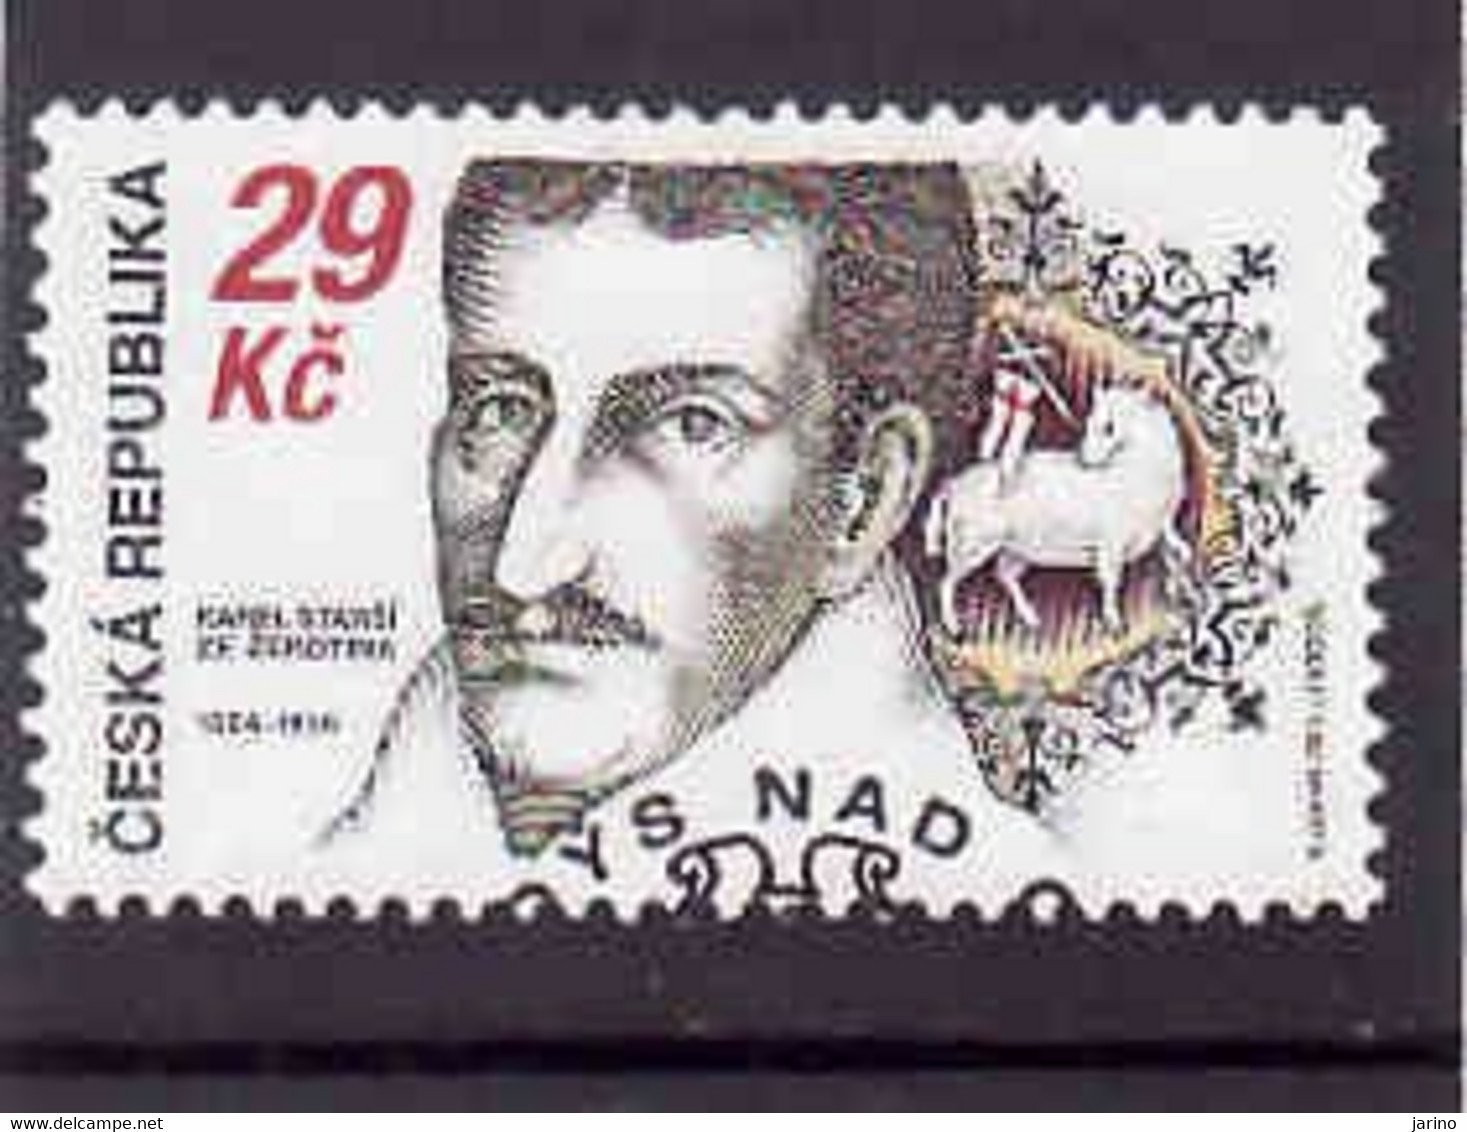 Czech Republic 2014, Michel 816, Karel Starší Ze Žerotína, Used.I Will Complete Your Wantlist Of Czech Or Slovak Stamps - Used Stamps